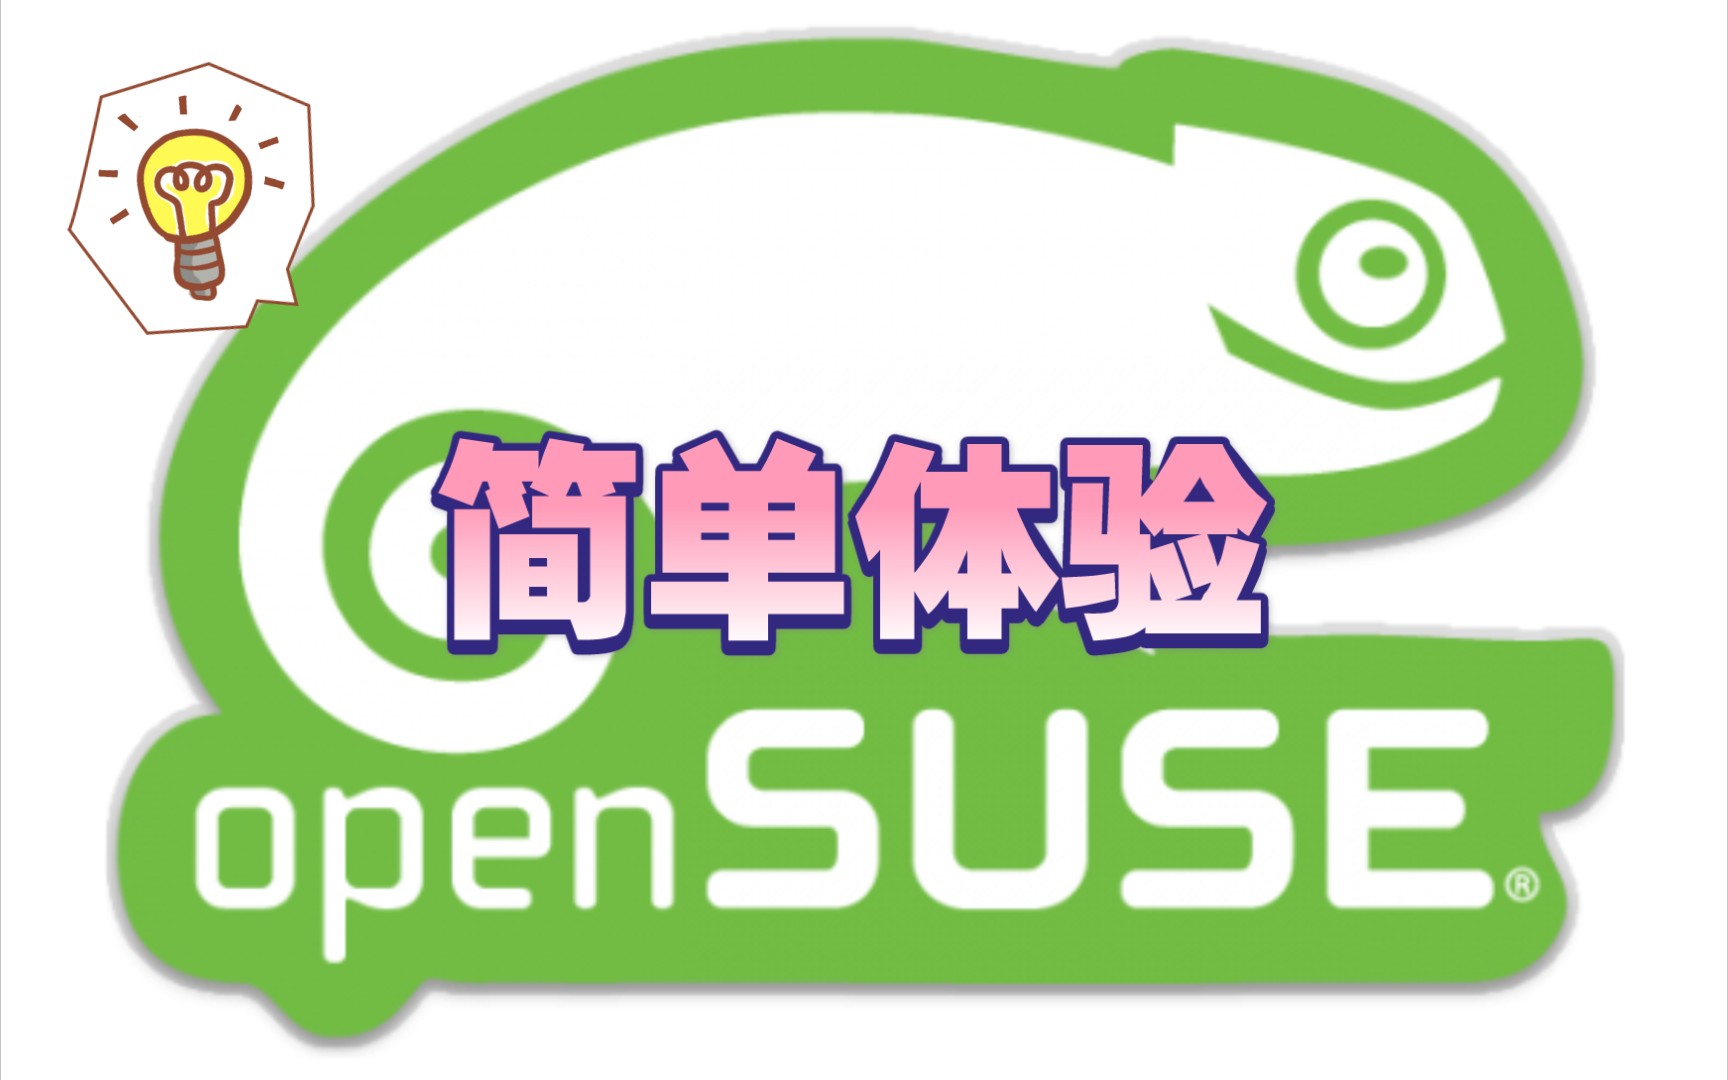 【凛白】openSUSE系统及内置应用简单体验